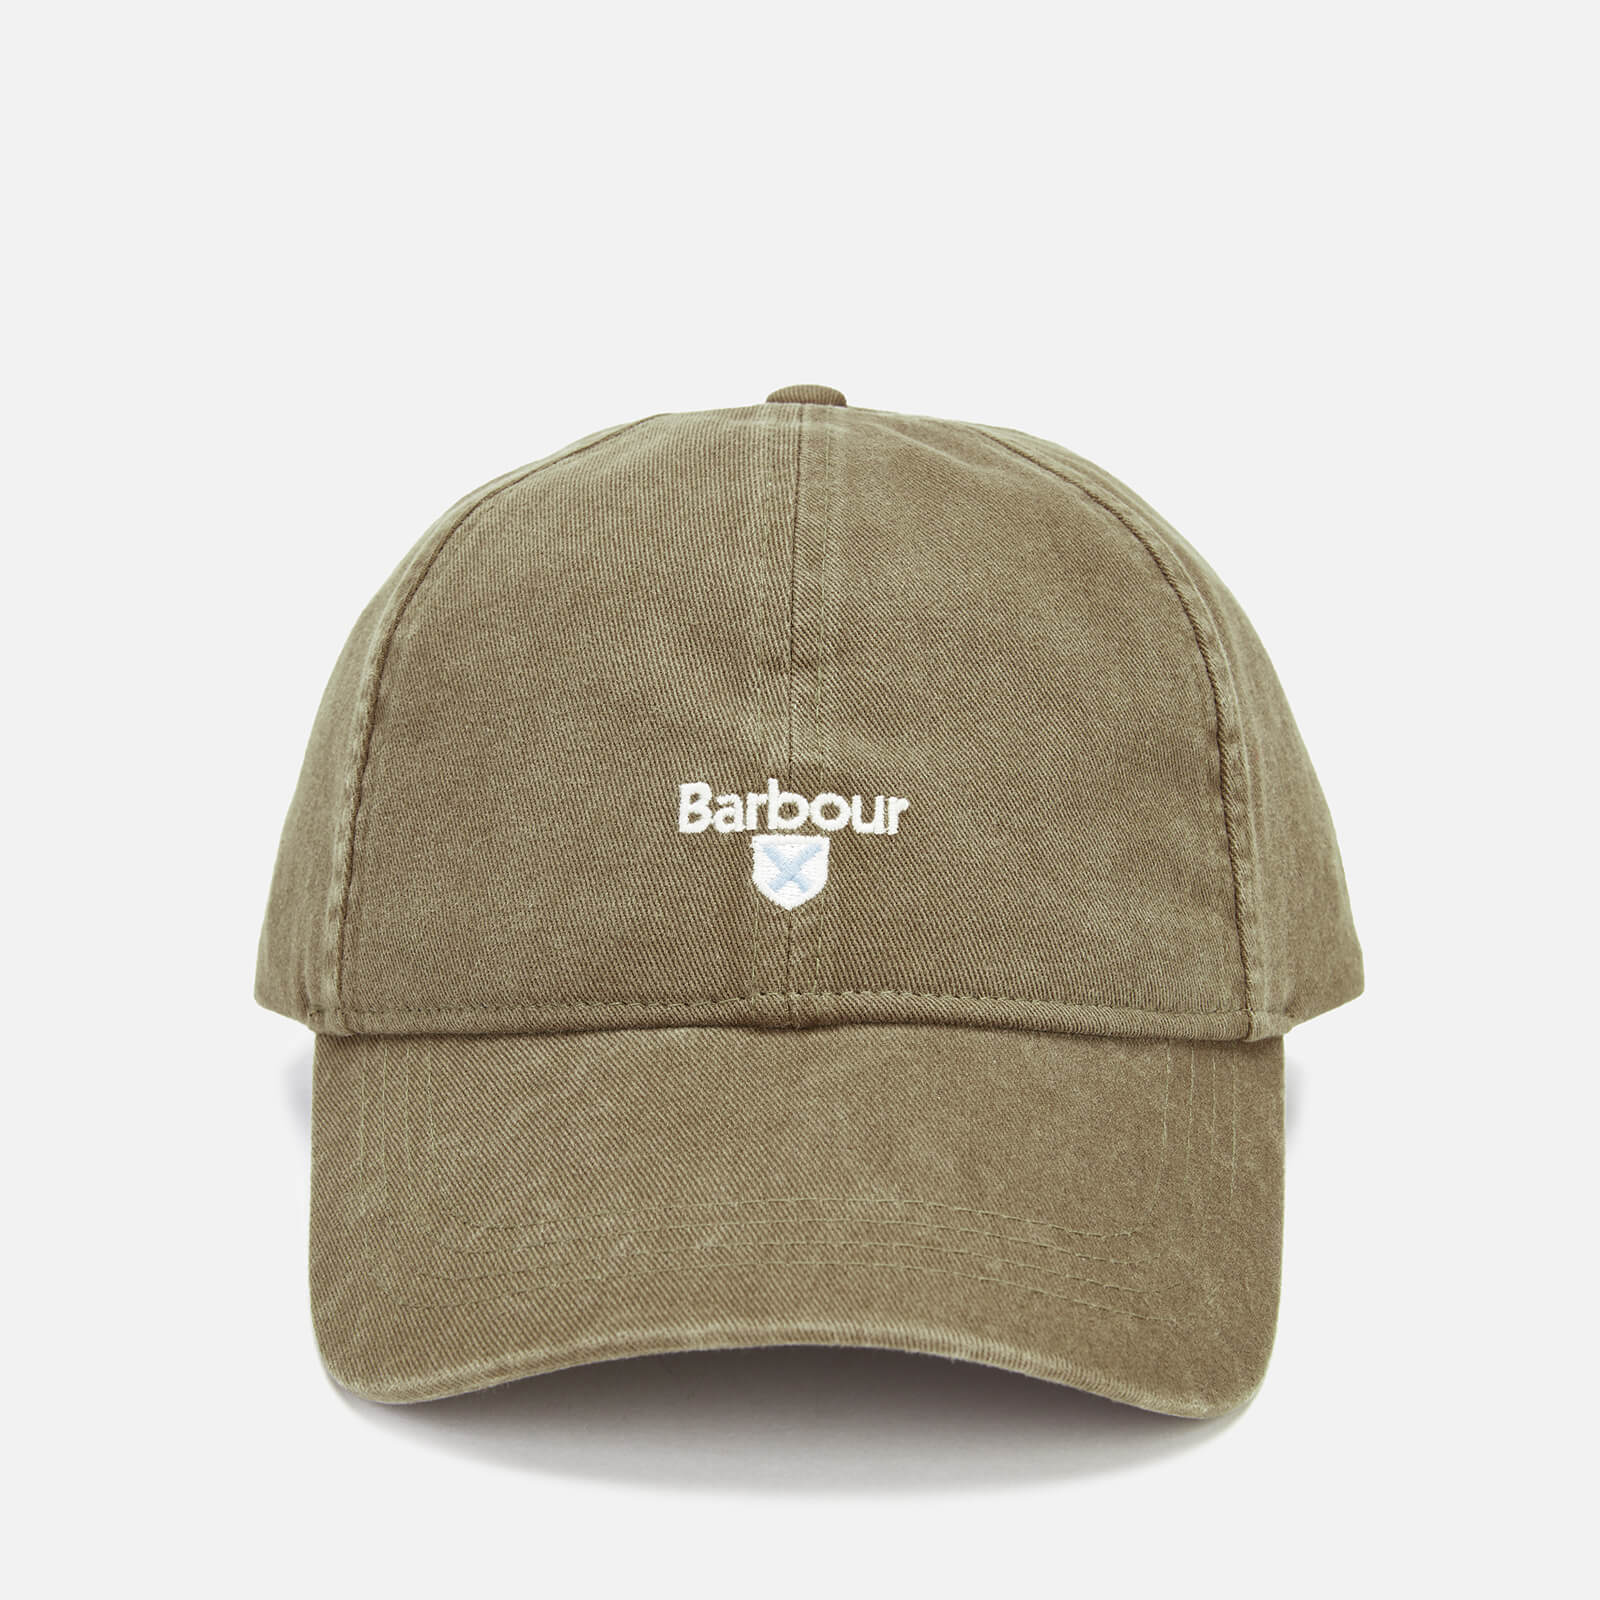 barbour cap